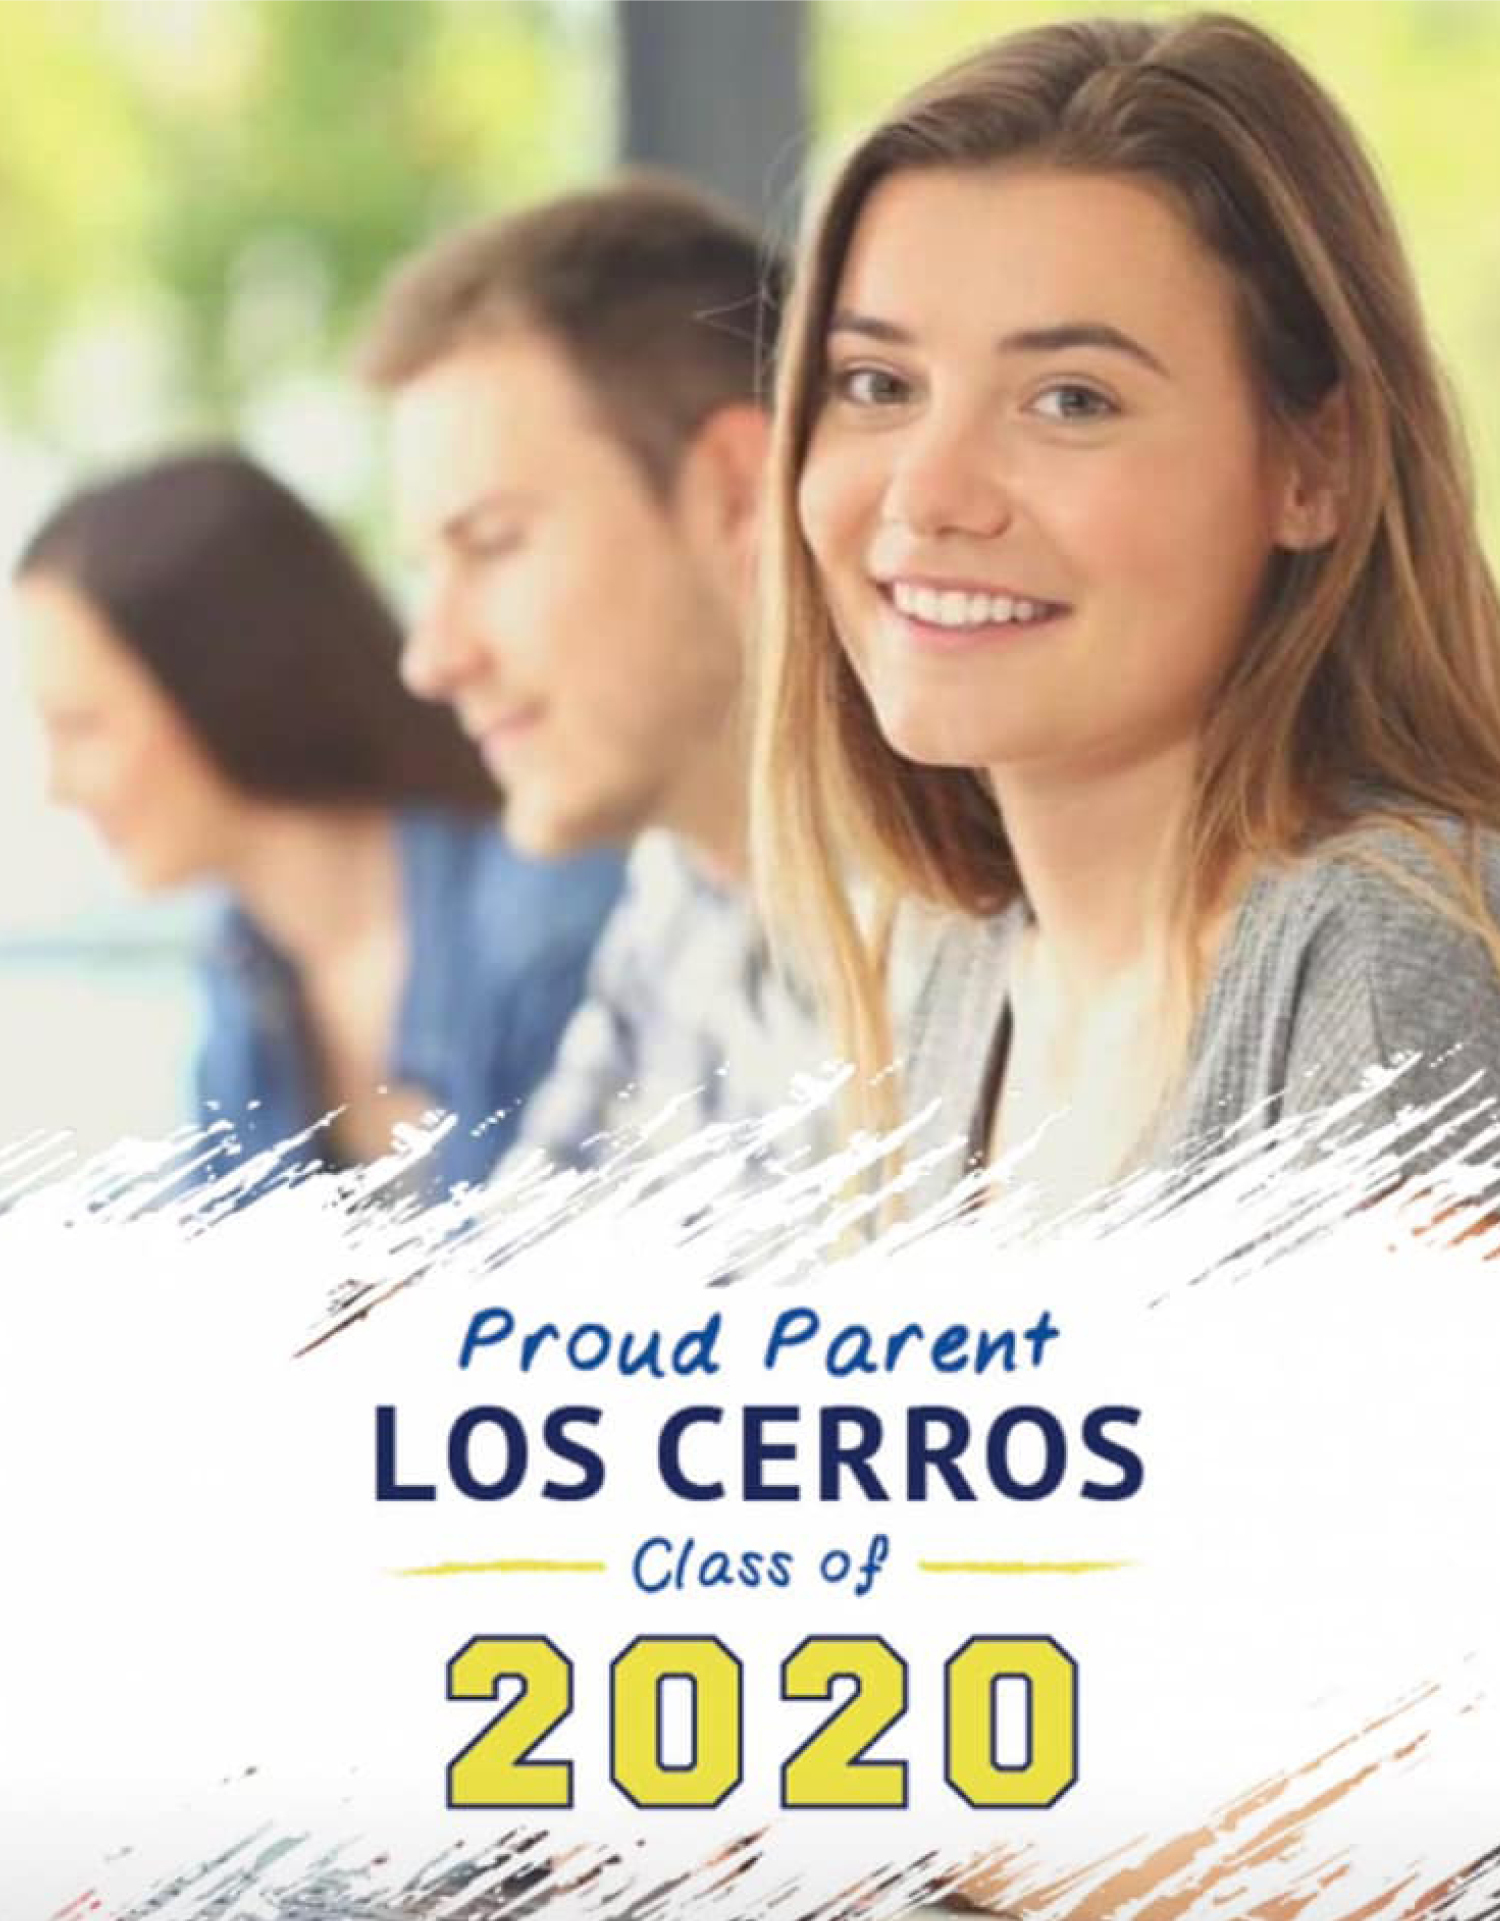 Los Cerros High School Facebook Parent Frame